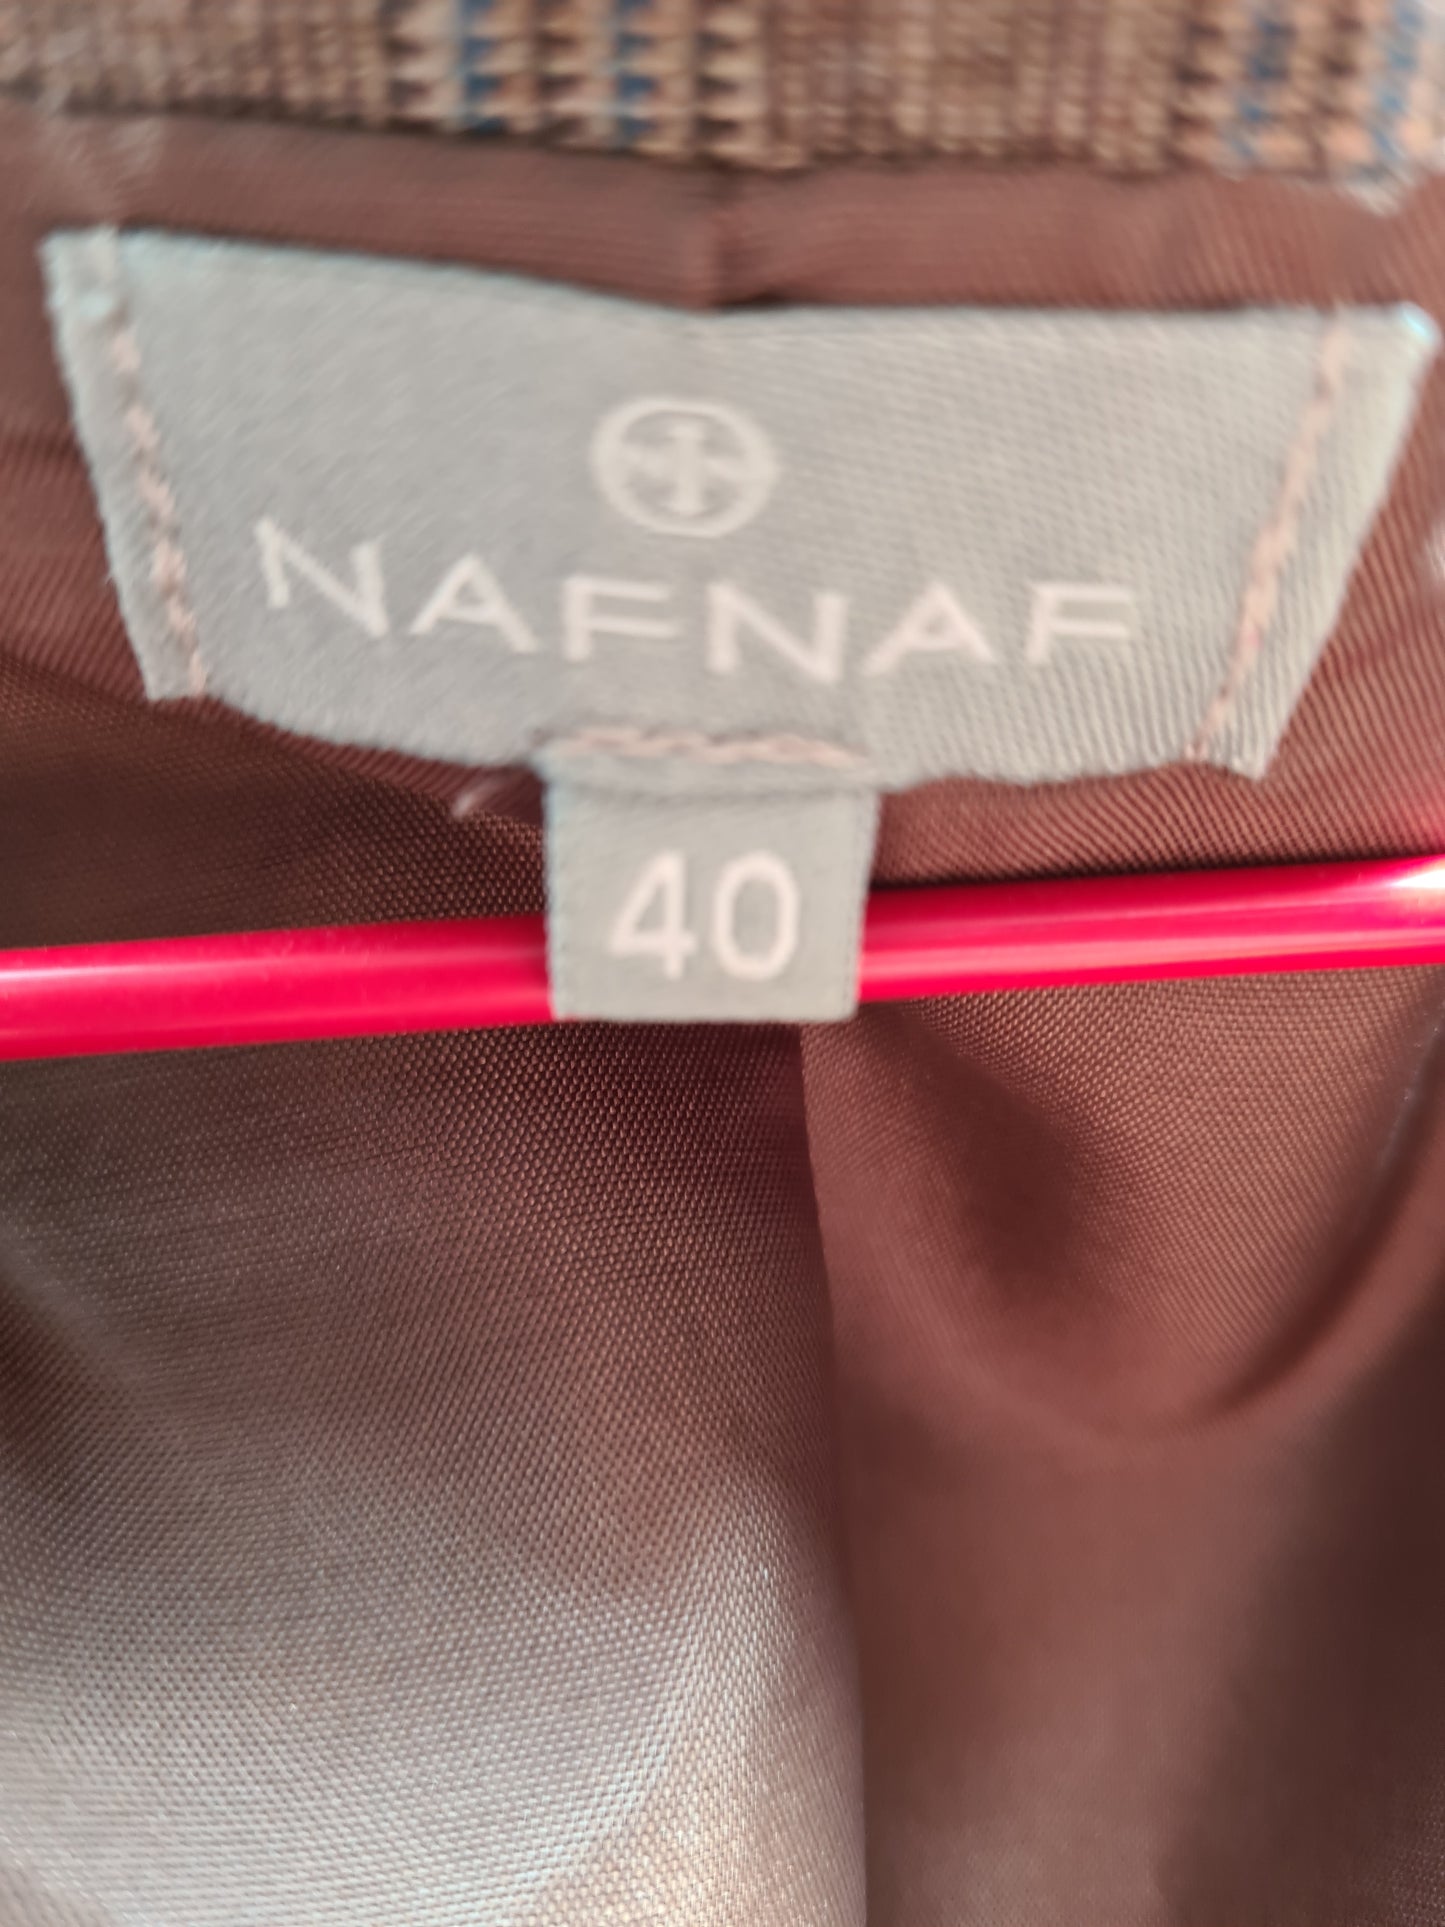 NaF NaF waist coat size12 FREE POSTAGE 🟣